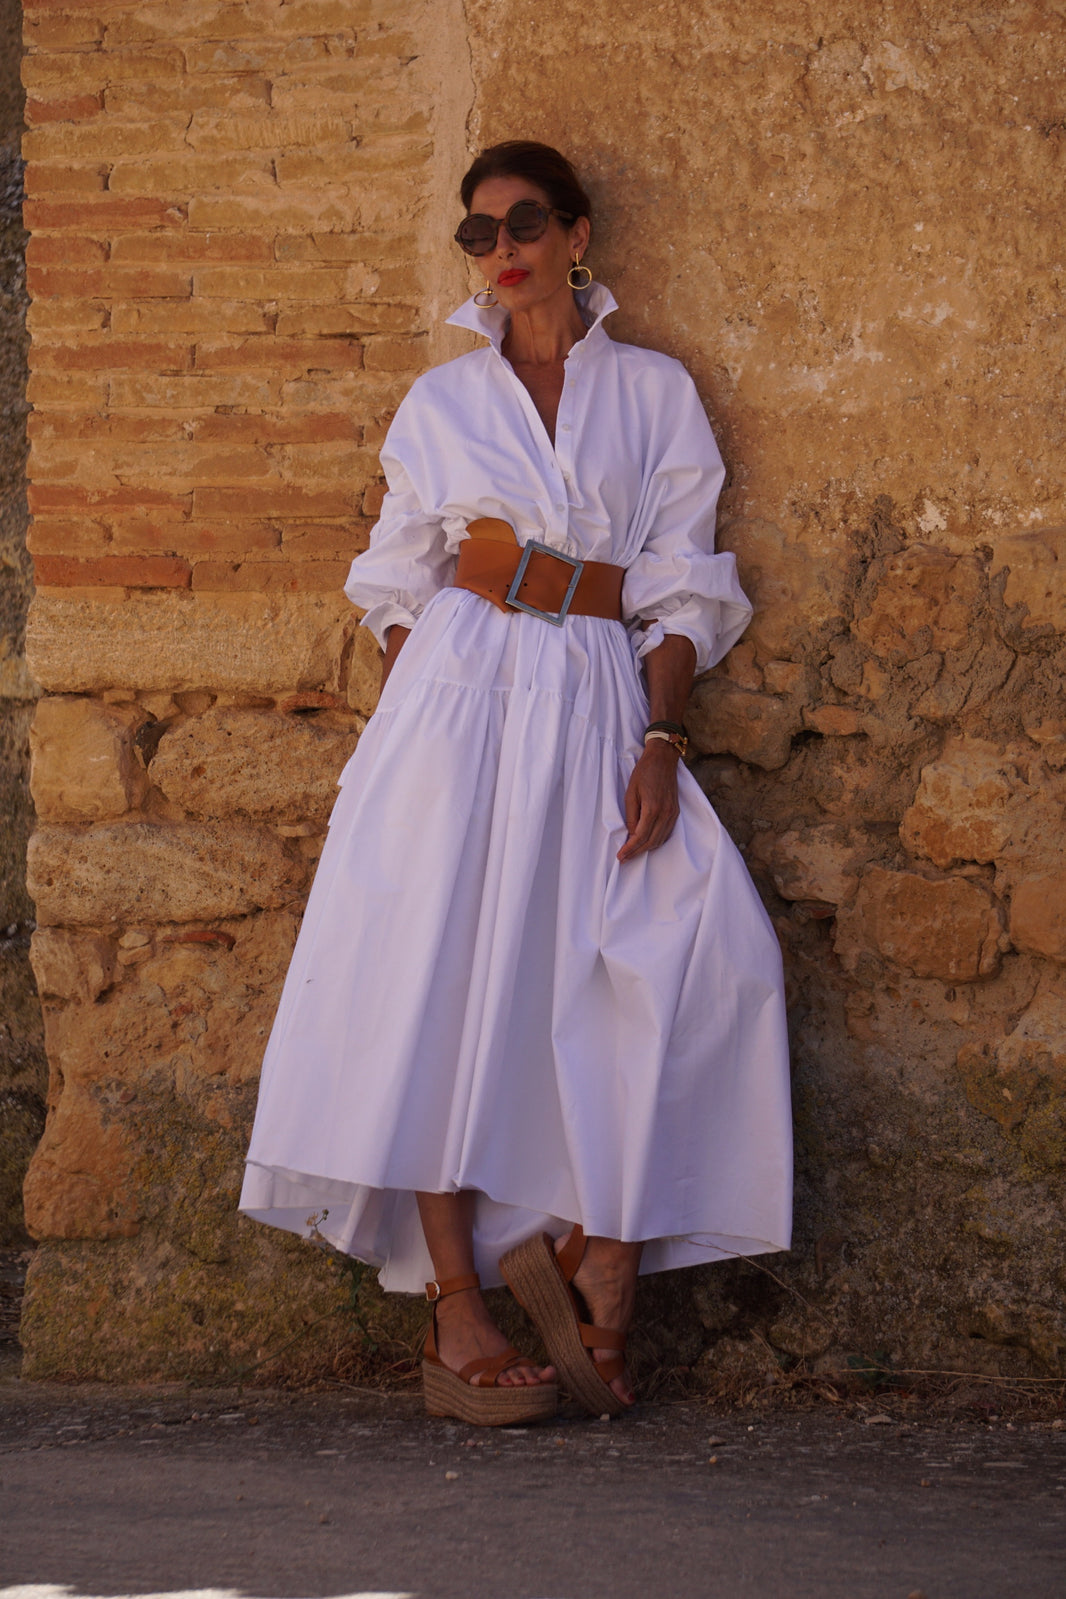 Marielle Stokkelaar | Egyption Cotton Dresses & More